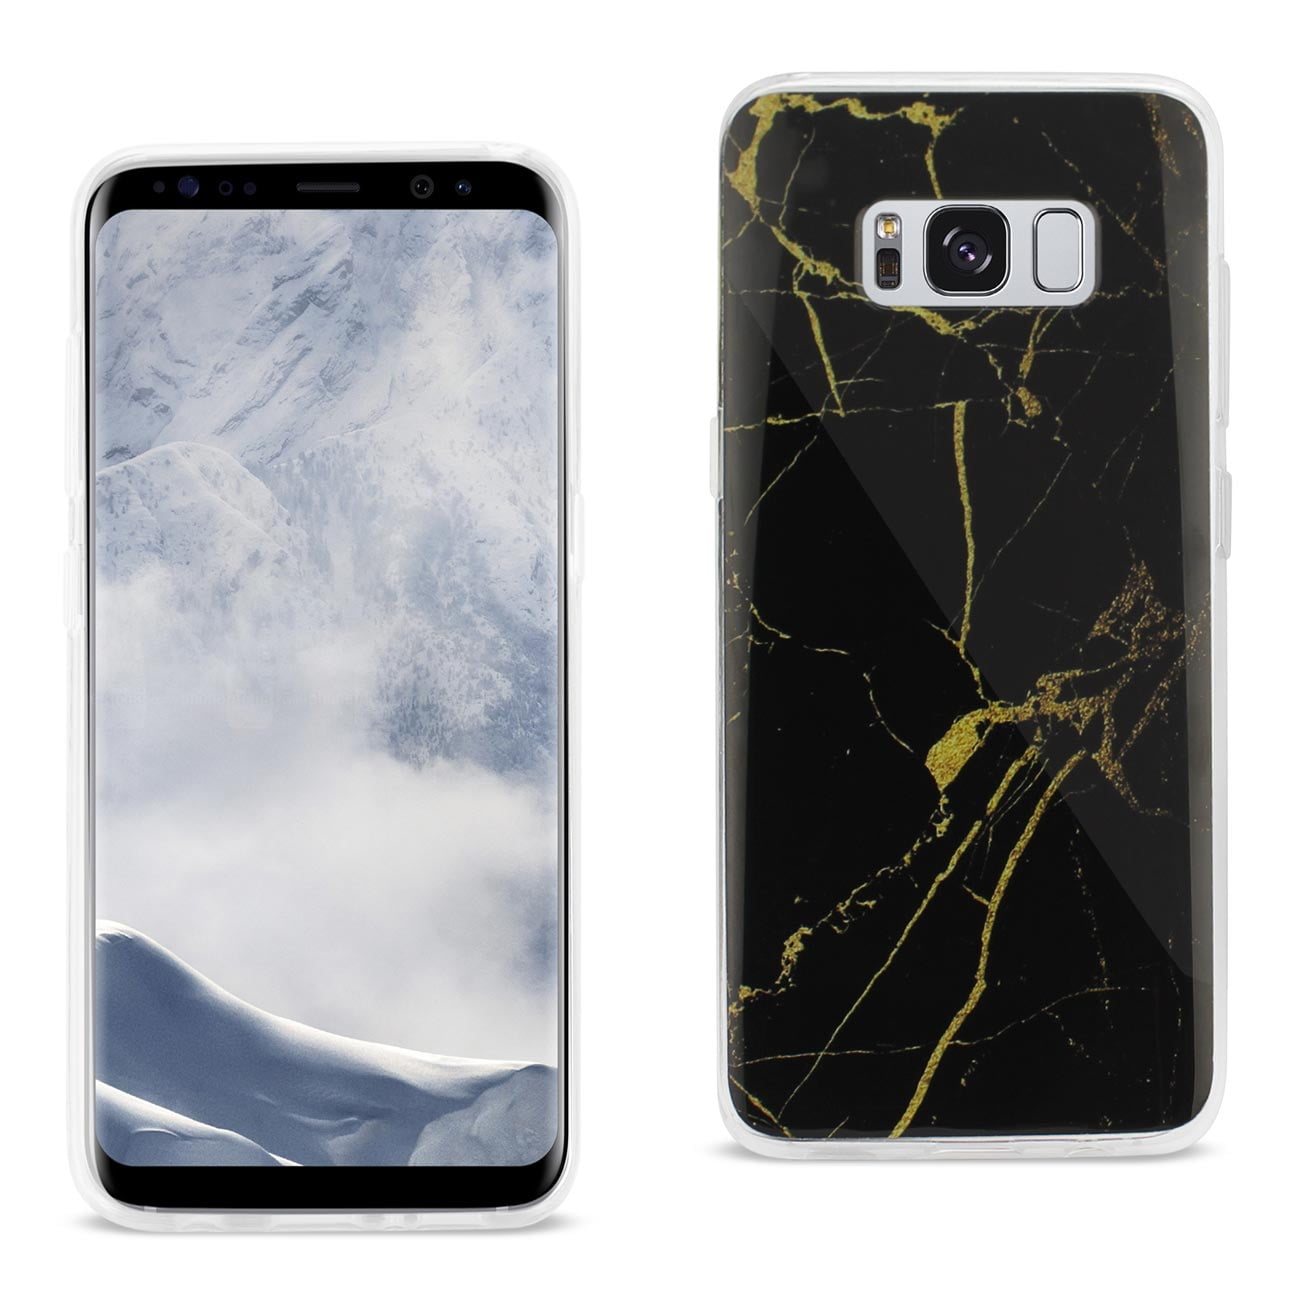 Marbre bois Print Coque Étui Phone Case pour Samsung Galaxy S9 S8 Plus S7 S6 Edge S5 S4 mini A3 A5 J3 J5 J7 Note 9 8 5 4 Core Grand Prime